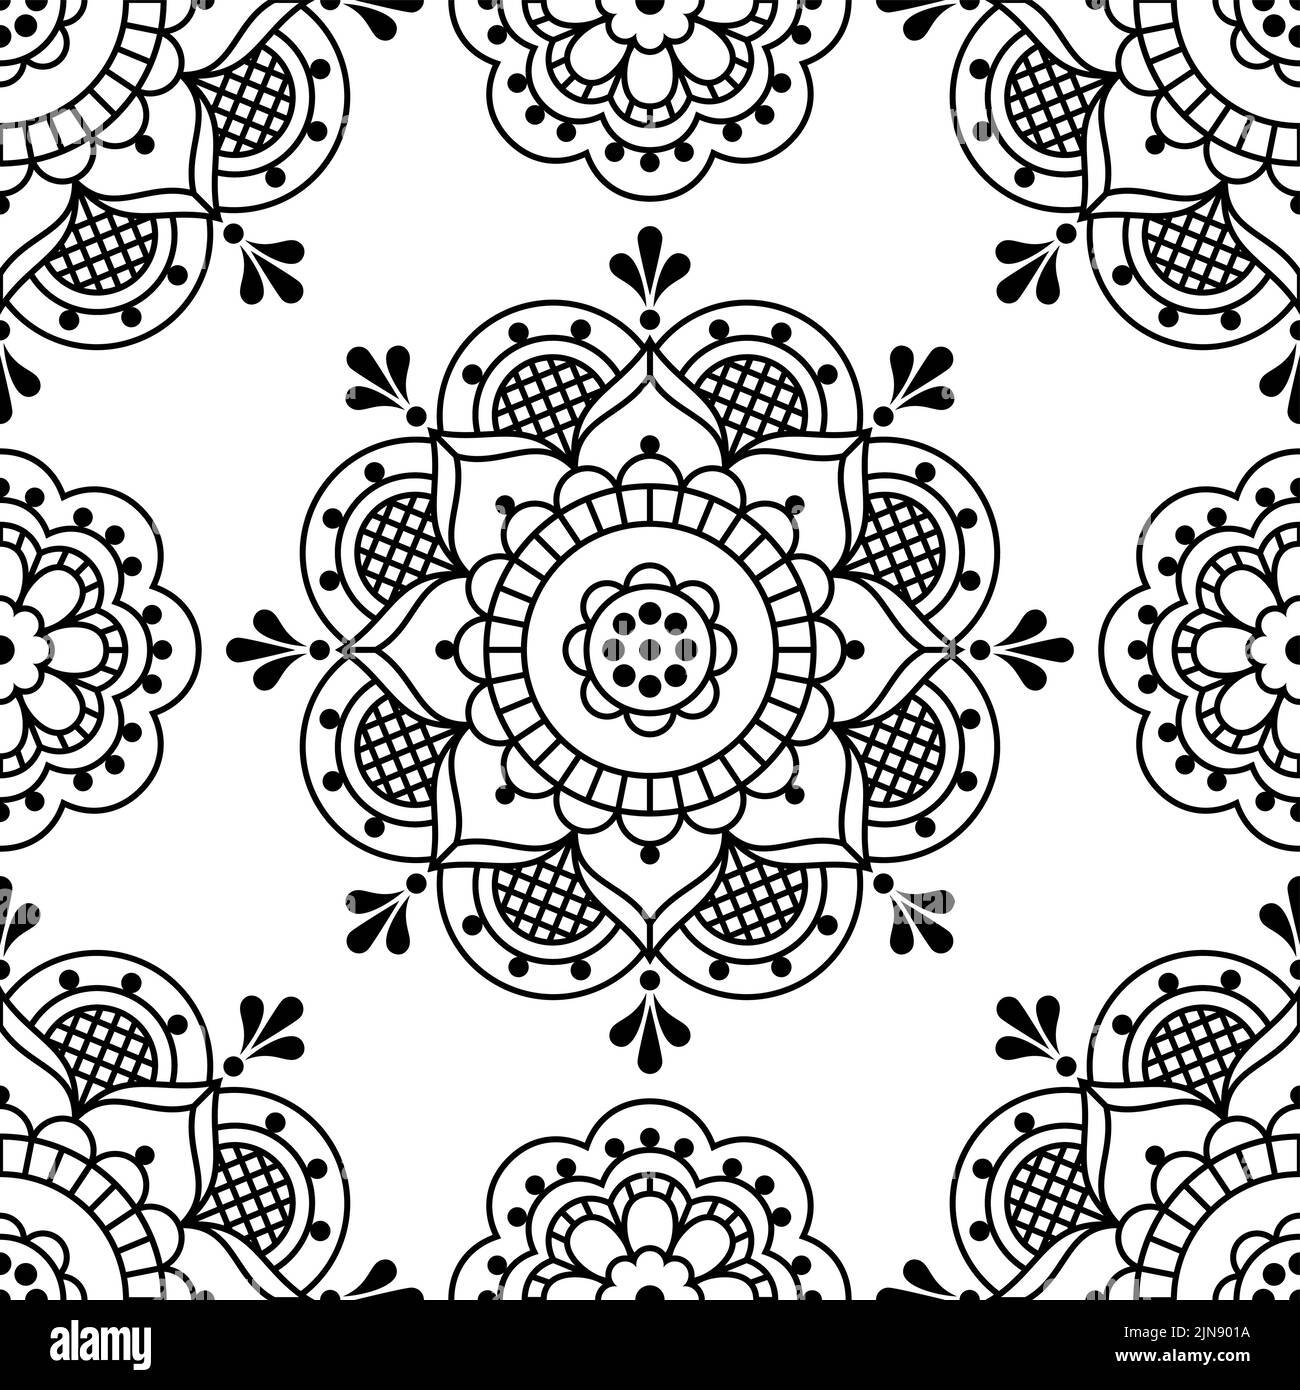 Skandinavische Volkskunst Stil Vektor nahtlose Muster mit Blumen, dekorative Textil-oder Stoffdruck-Design in schwarz auf weißem Hintergrund Stock Vektor